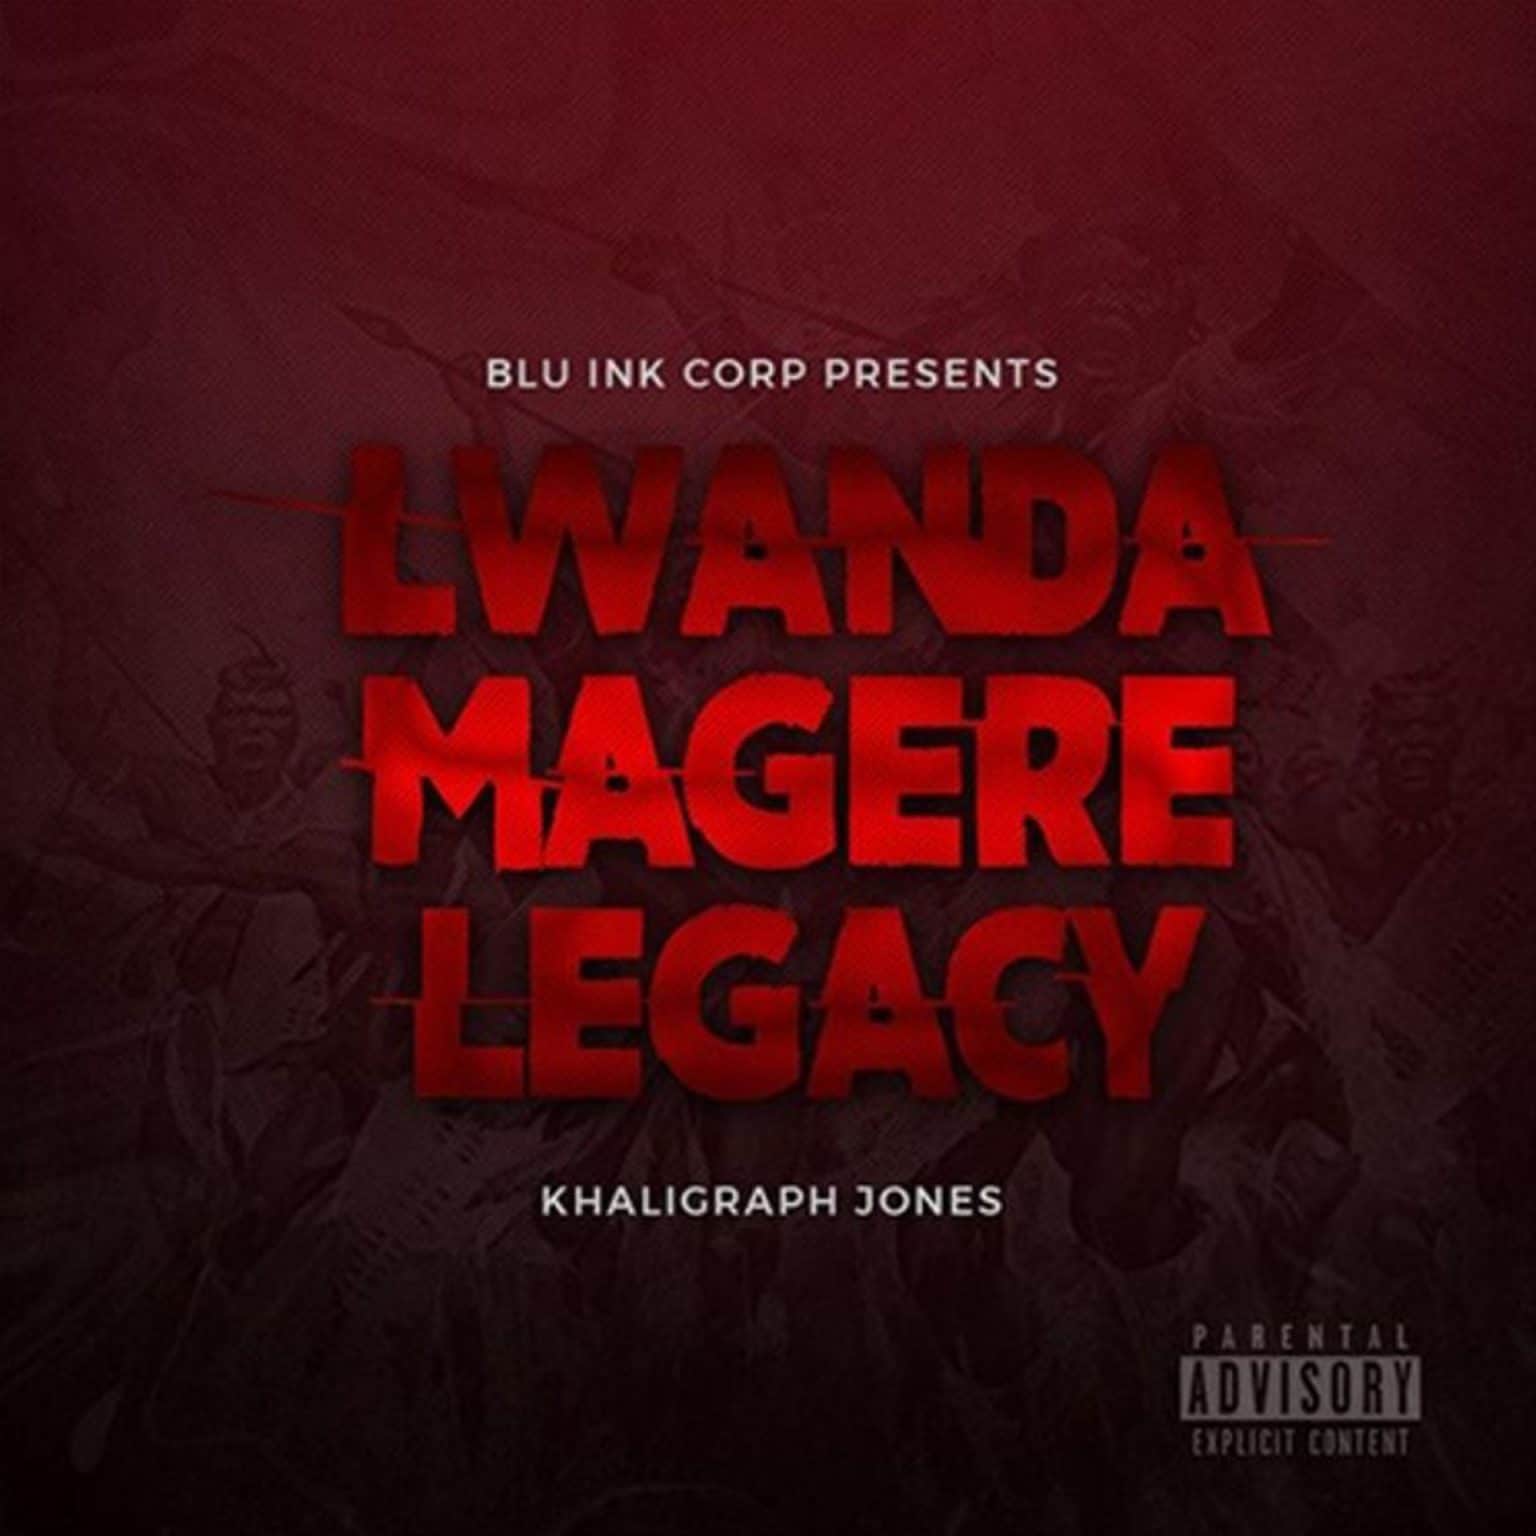 khaligraph jones lwanda magere legacy 1 1536x1536 1 - Bekaboy